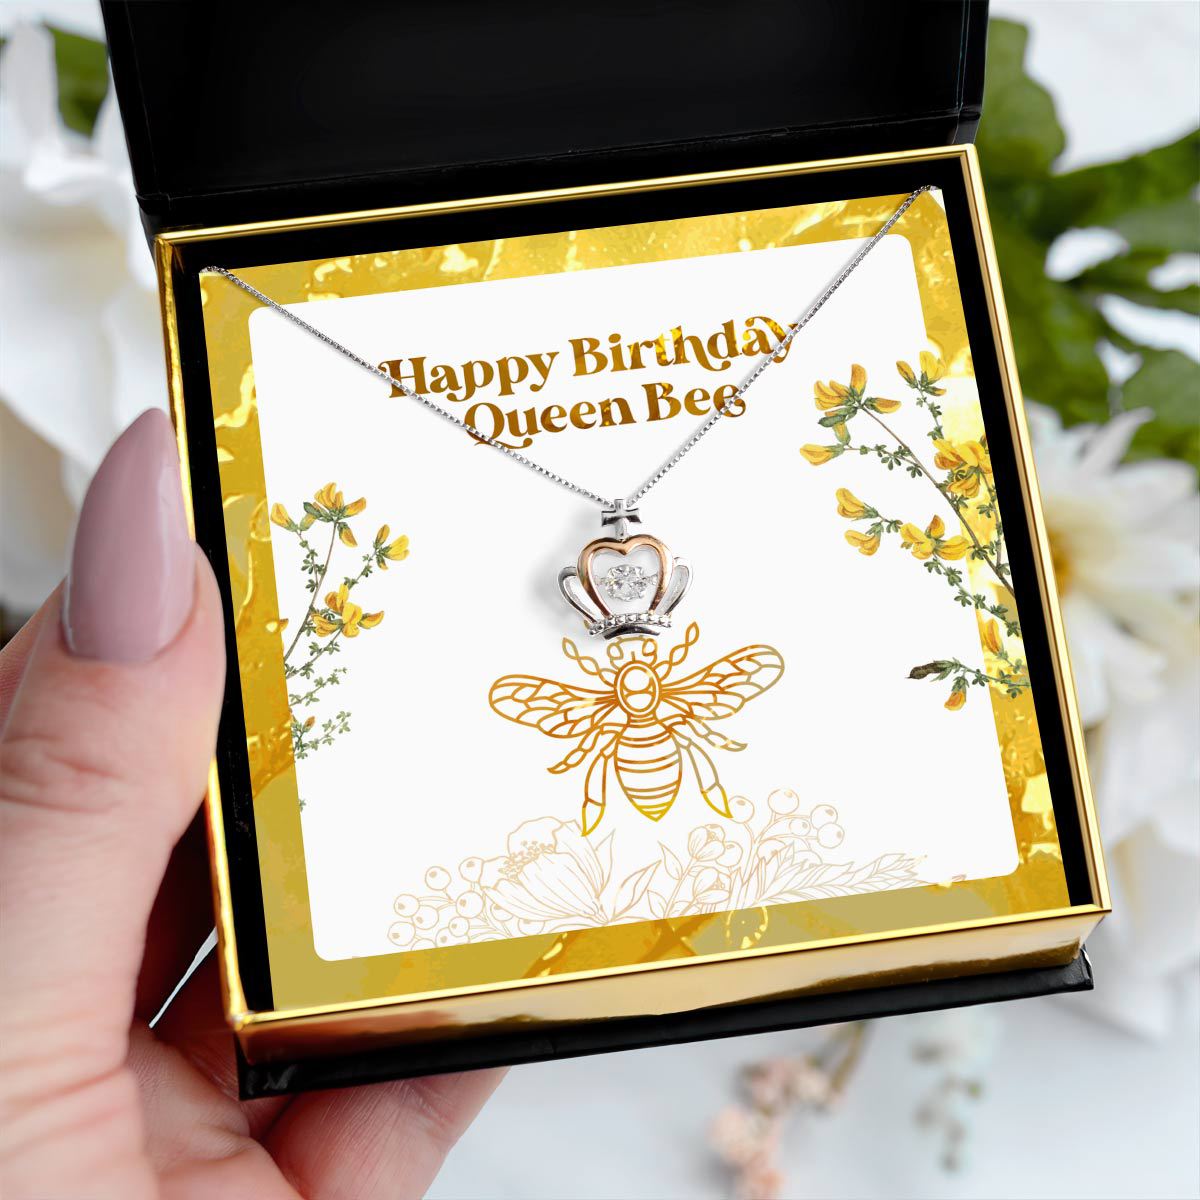 Happy Birthday Queen Bee - Luxe Crown Pendant Necklace Gift Set